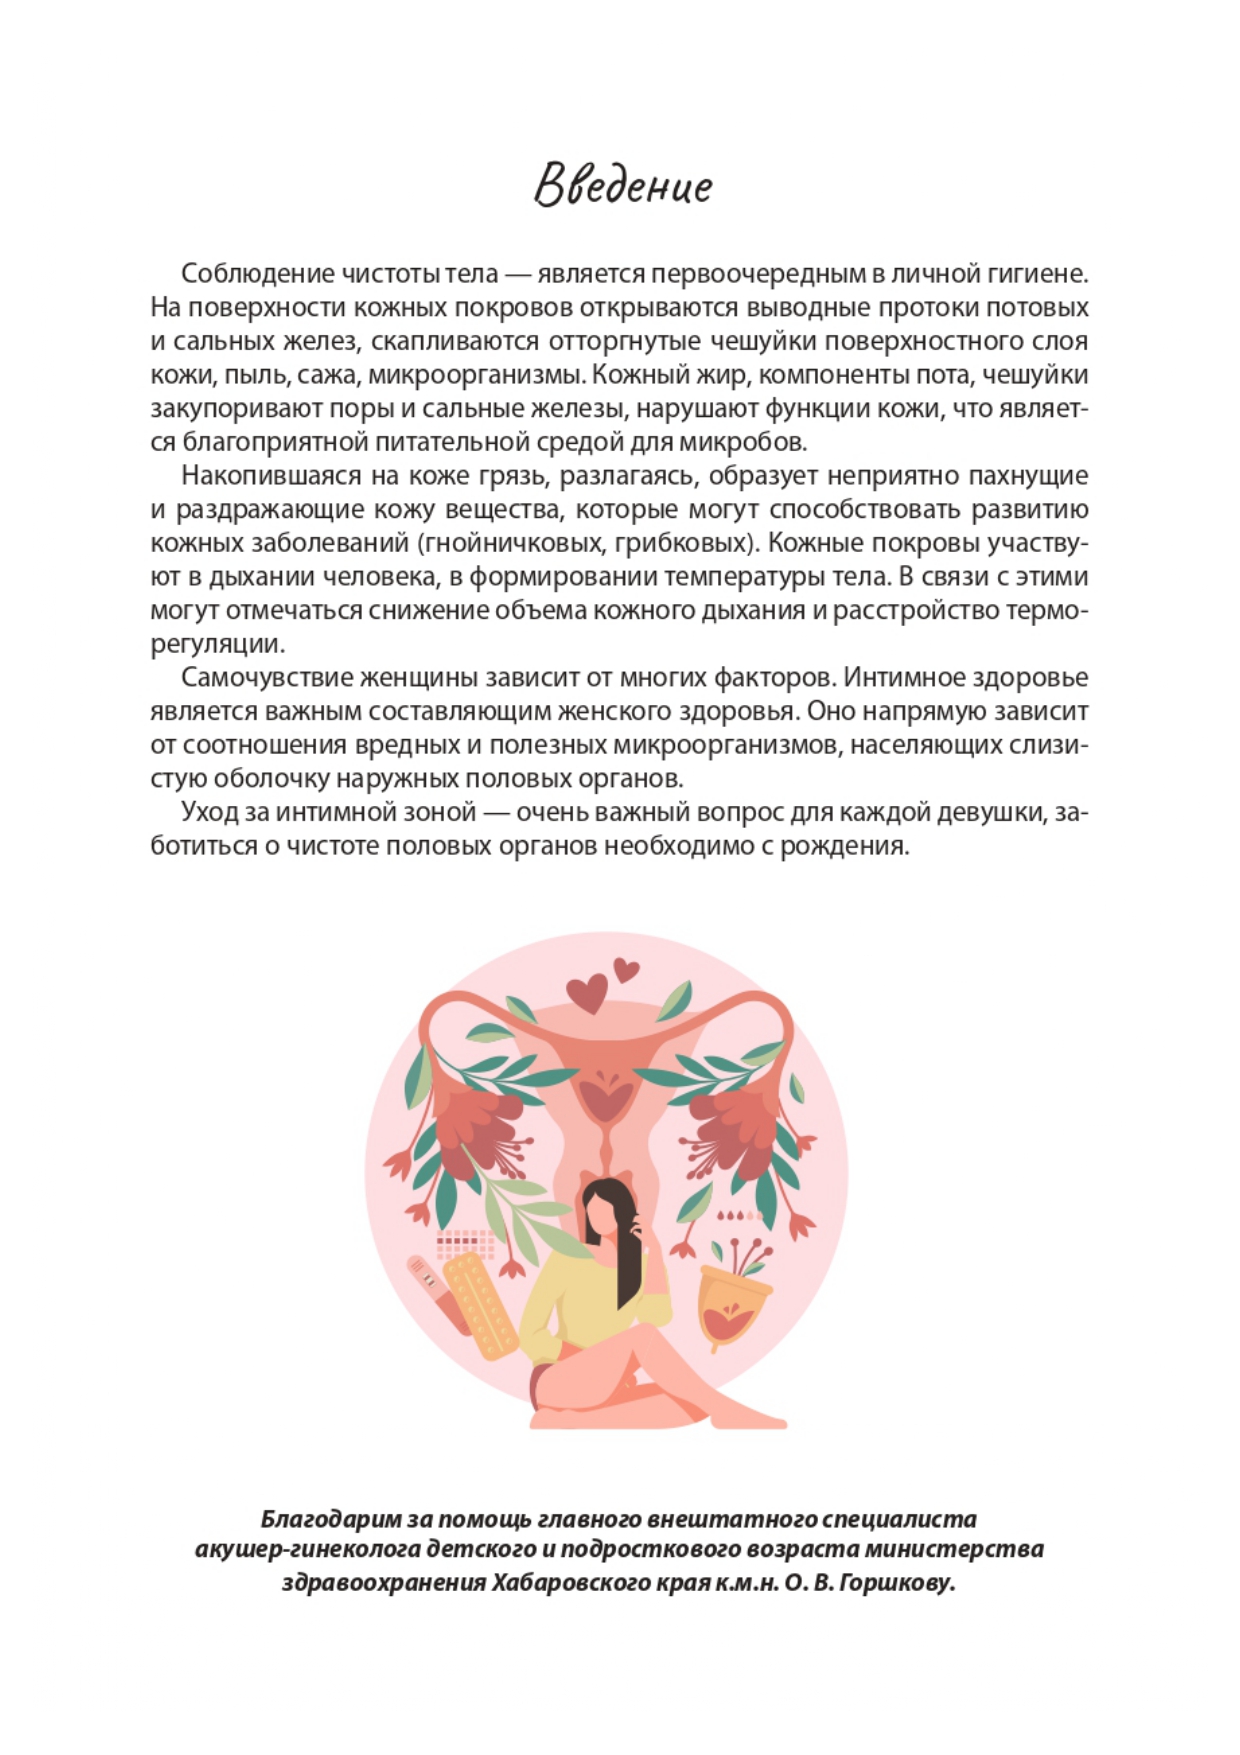 reproduktivnoe-zdorove-devochkam page-0002